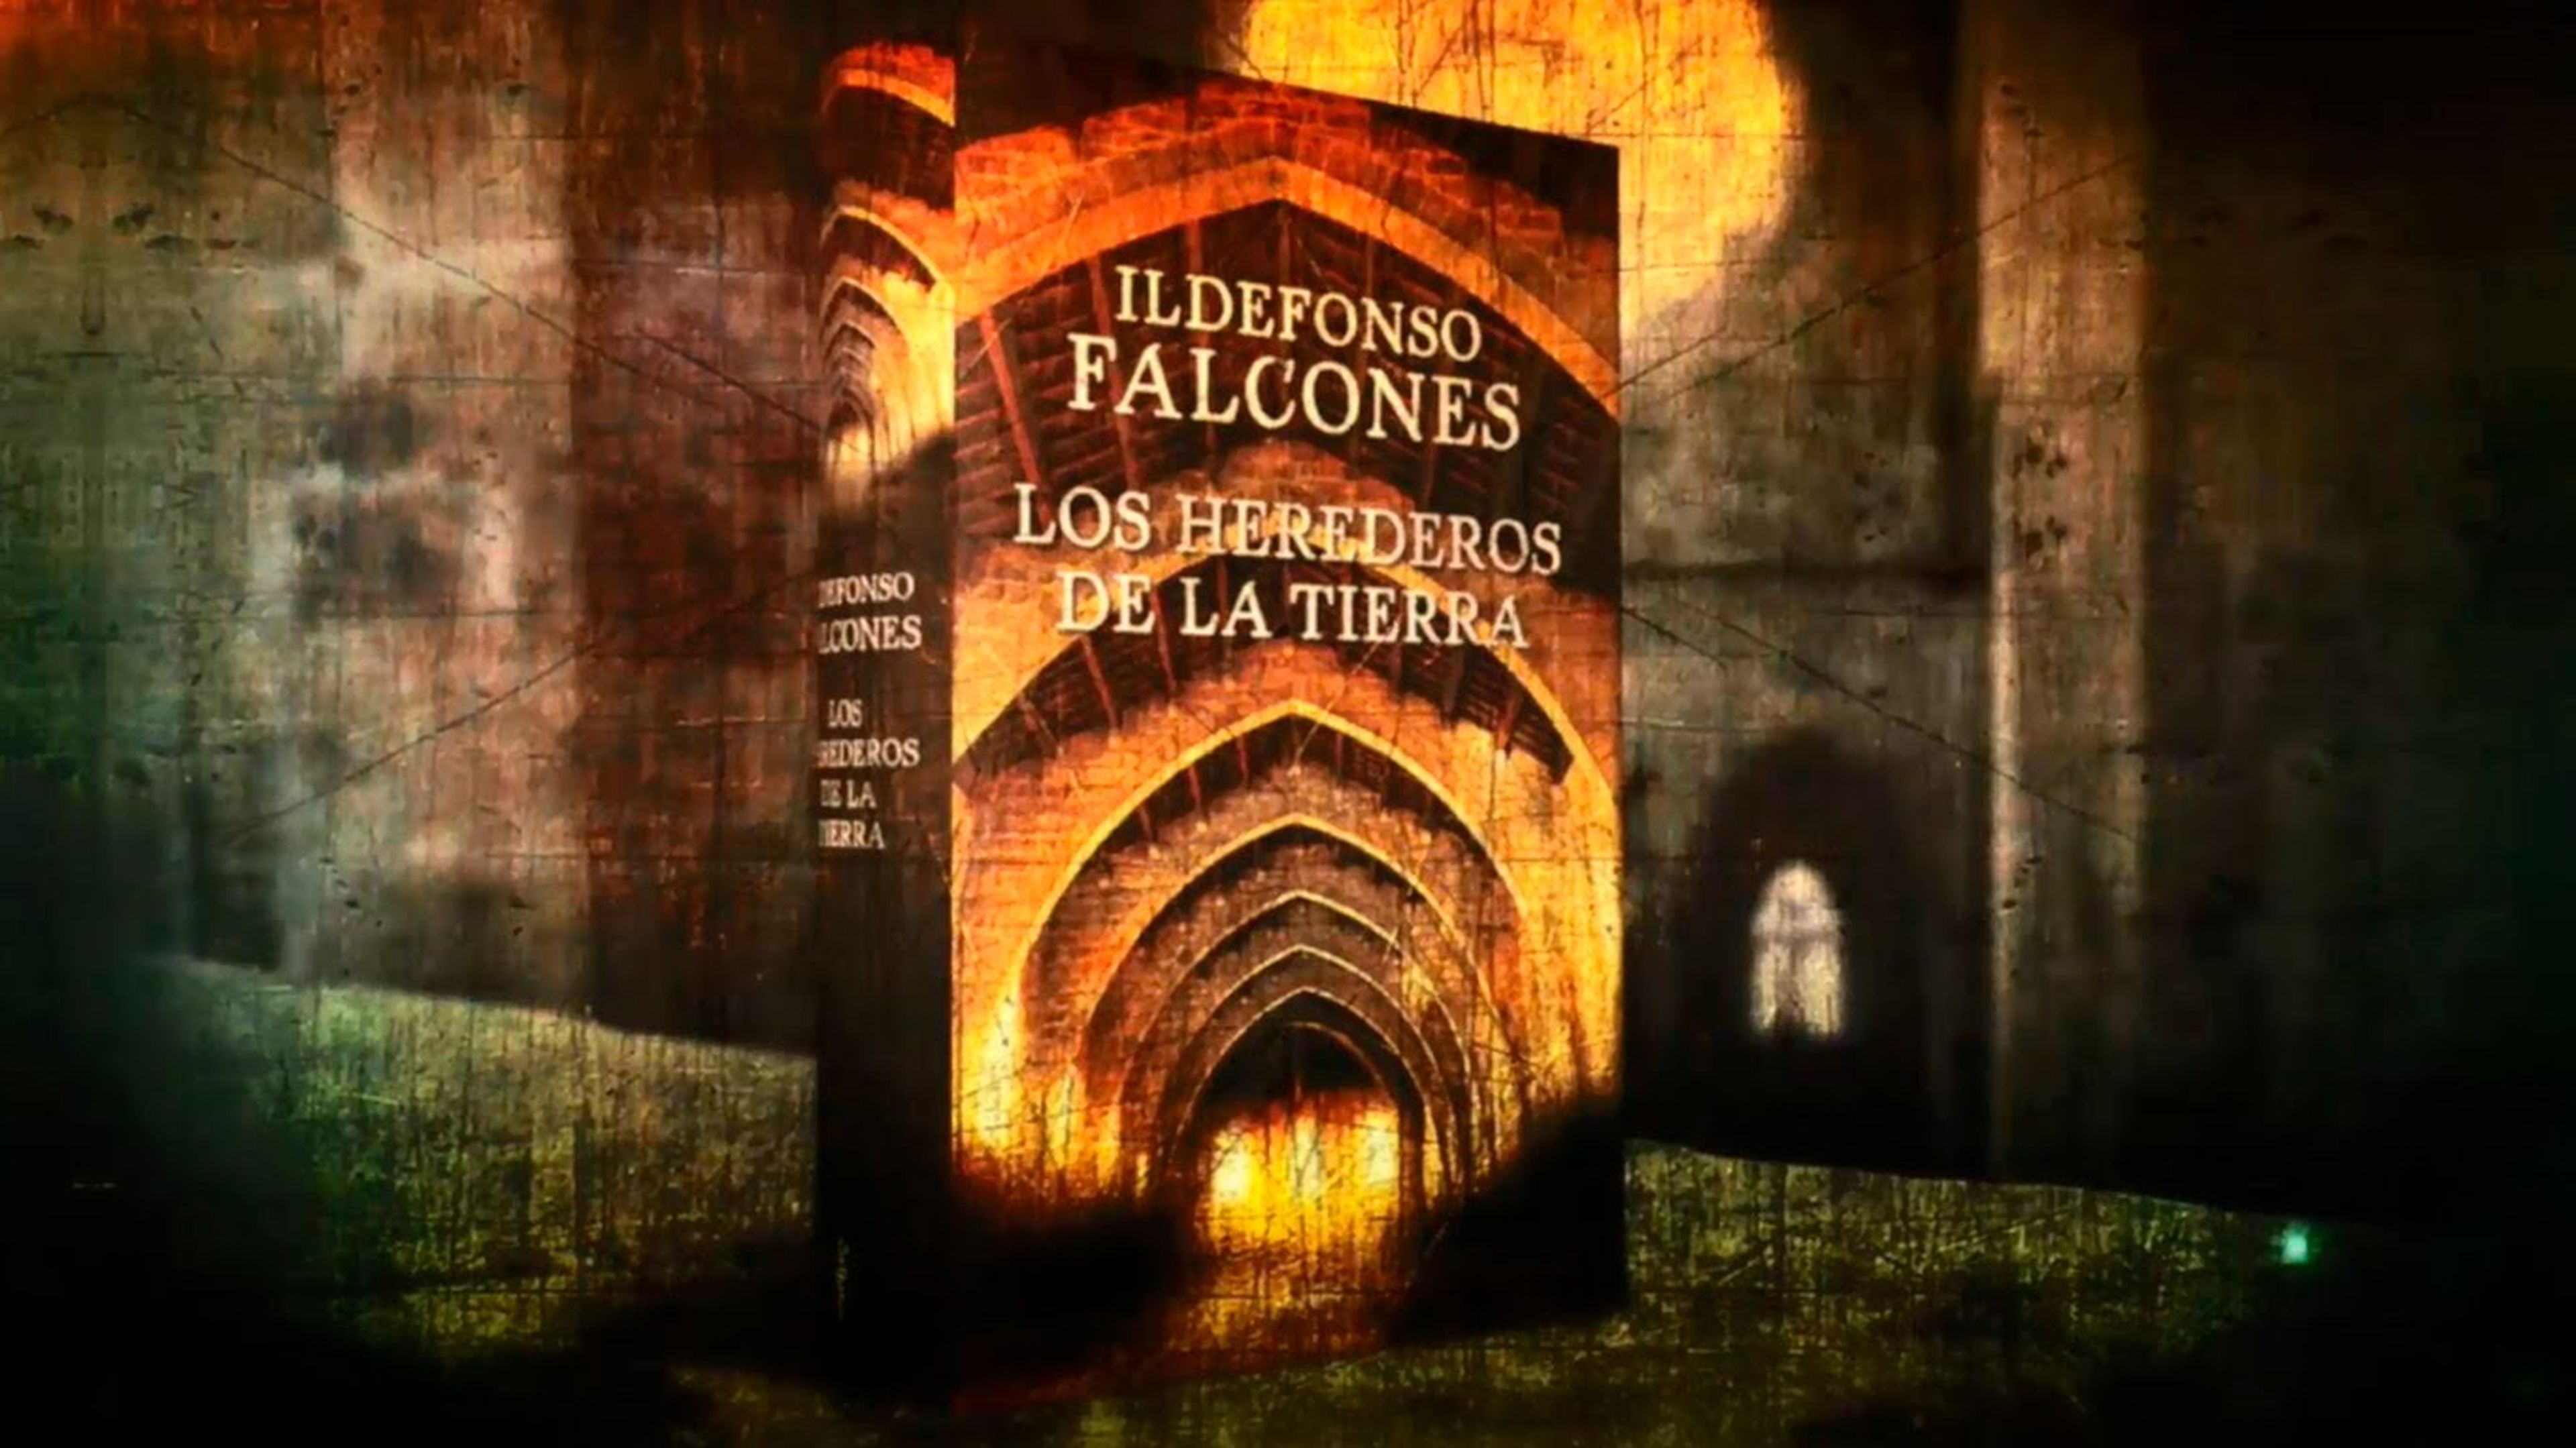 2. Los herederos de la tierra - Ildefonso Falcones